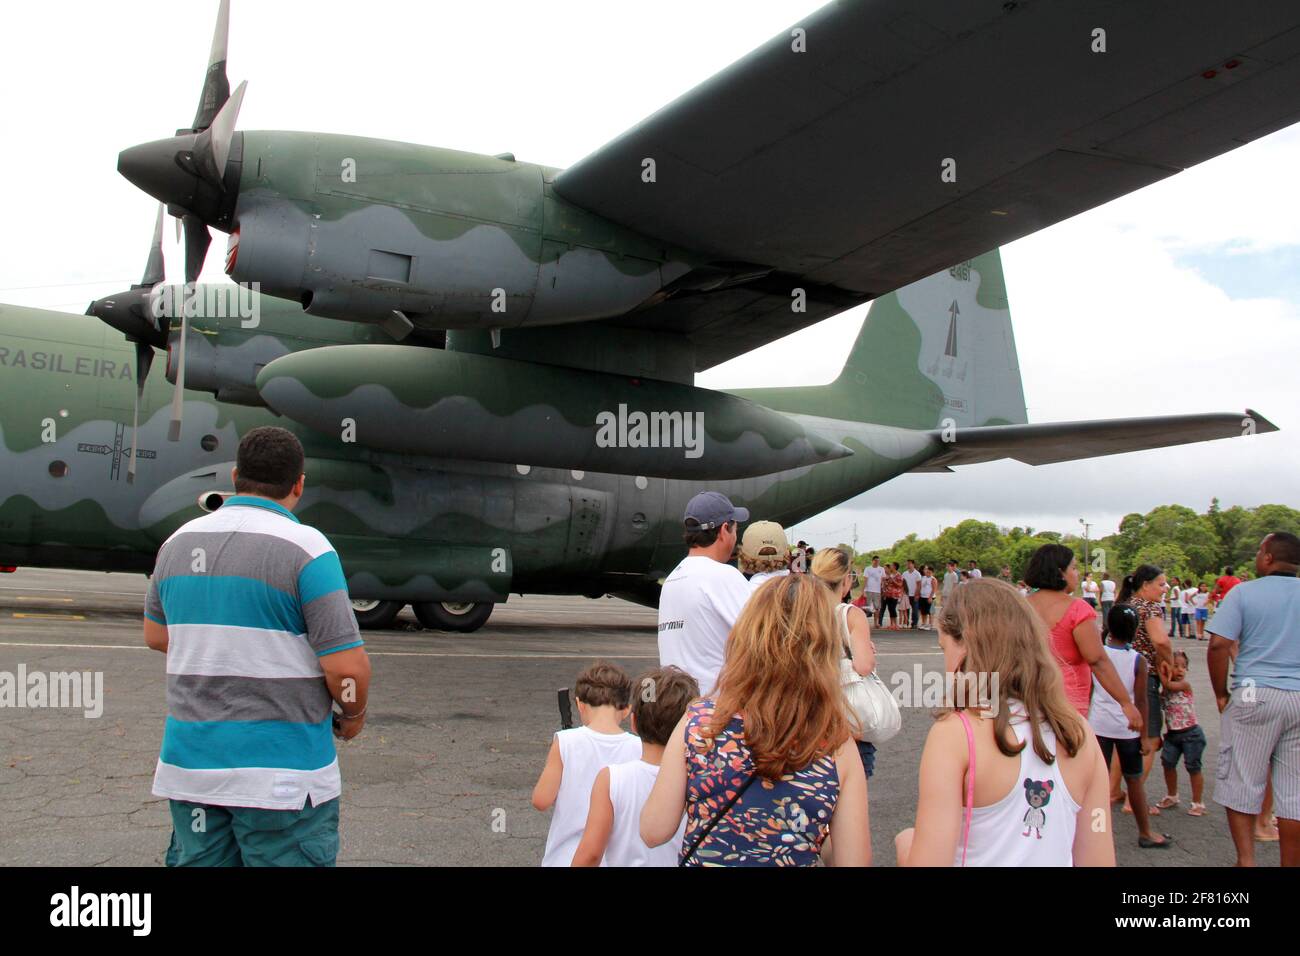 salvador, bahia / brazil - november 10, 2012: Hercules aircraft from Força Aerea Brasileira is seen at the Base Aerea de Salvador. *** Local Caption * Stock Photo